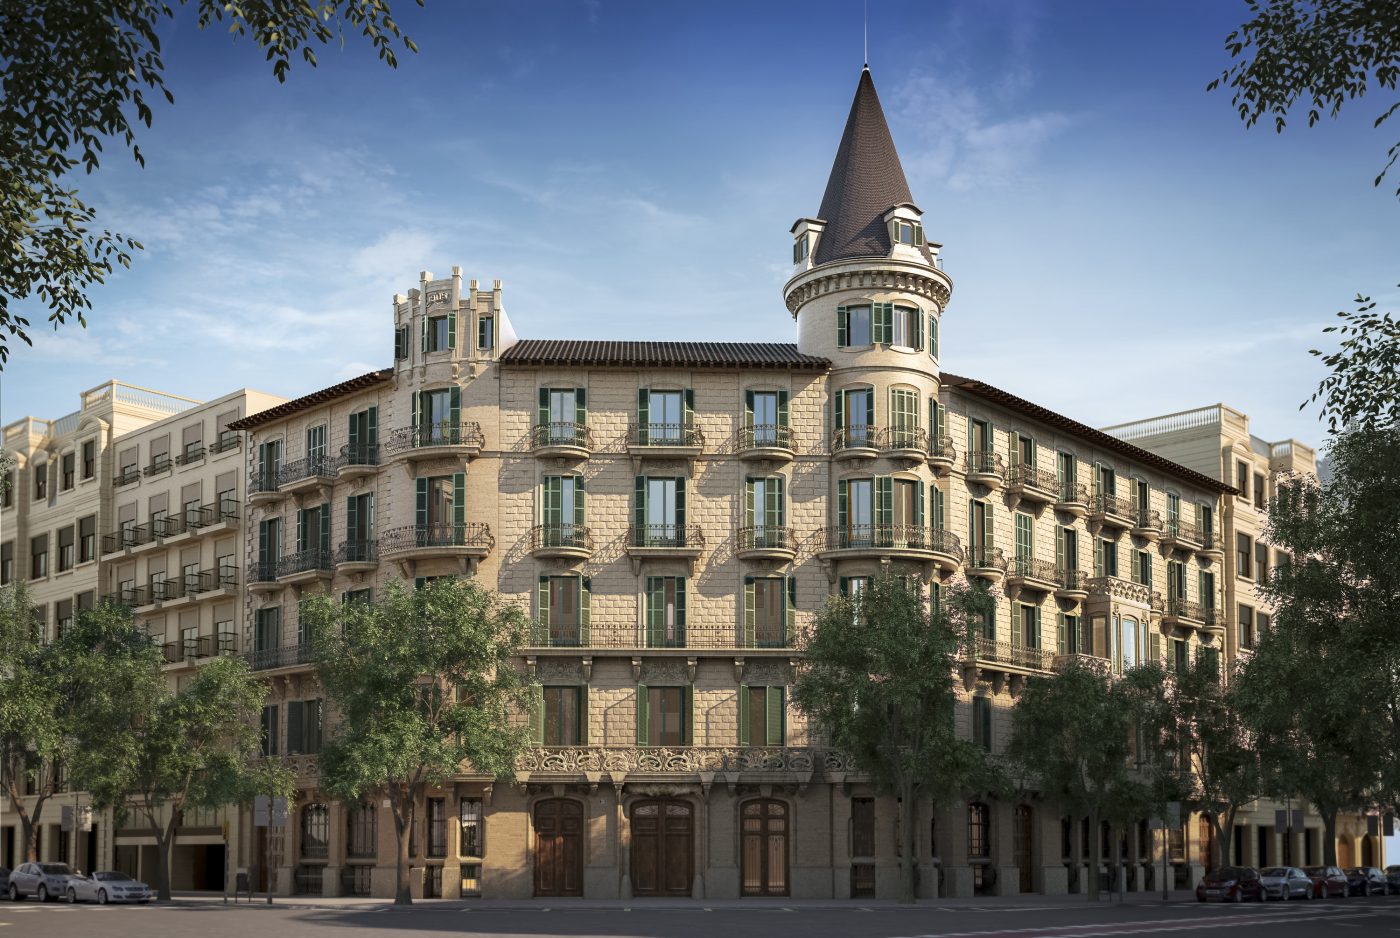 Una empresa de textiles de 1900 en Barcelona fue transformada en viviendas de ensueño